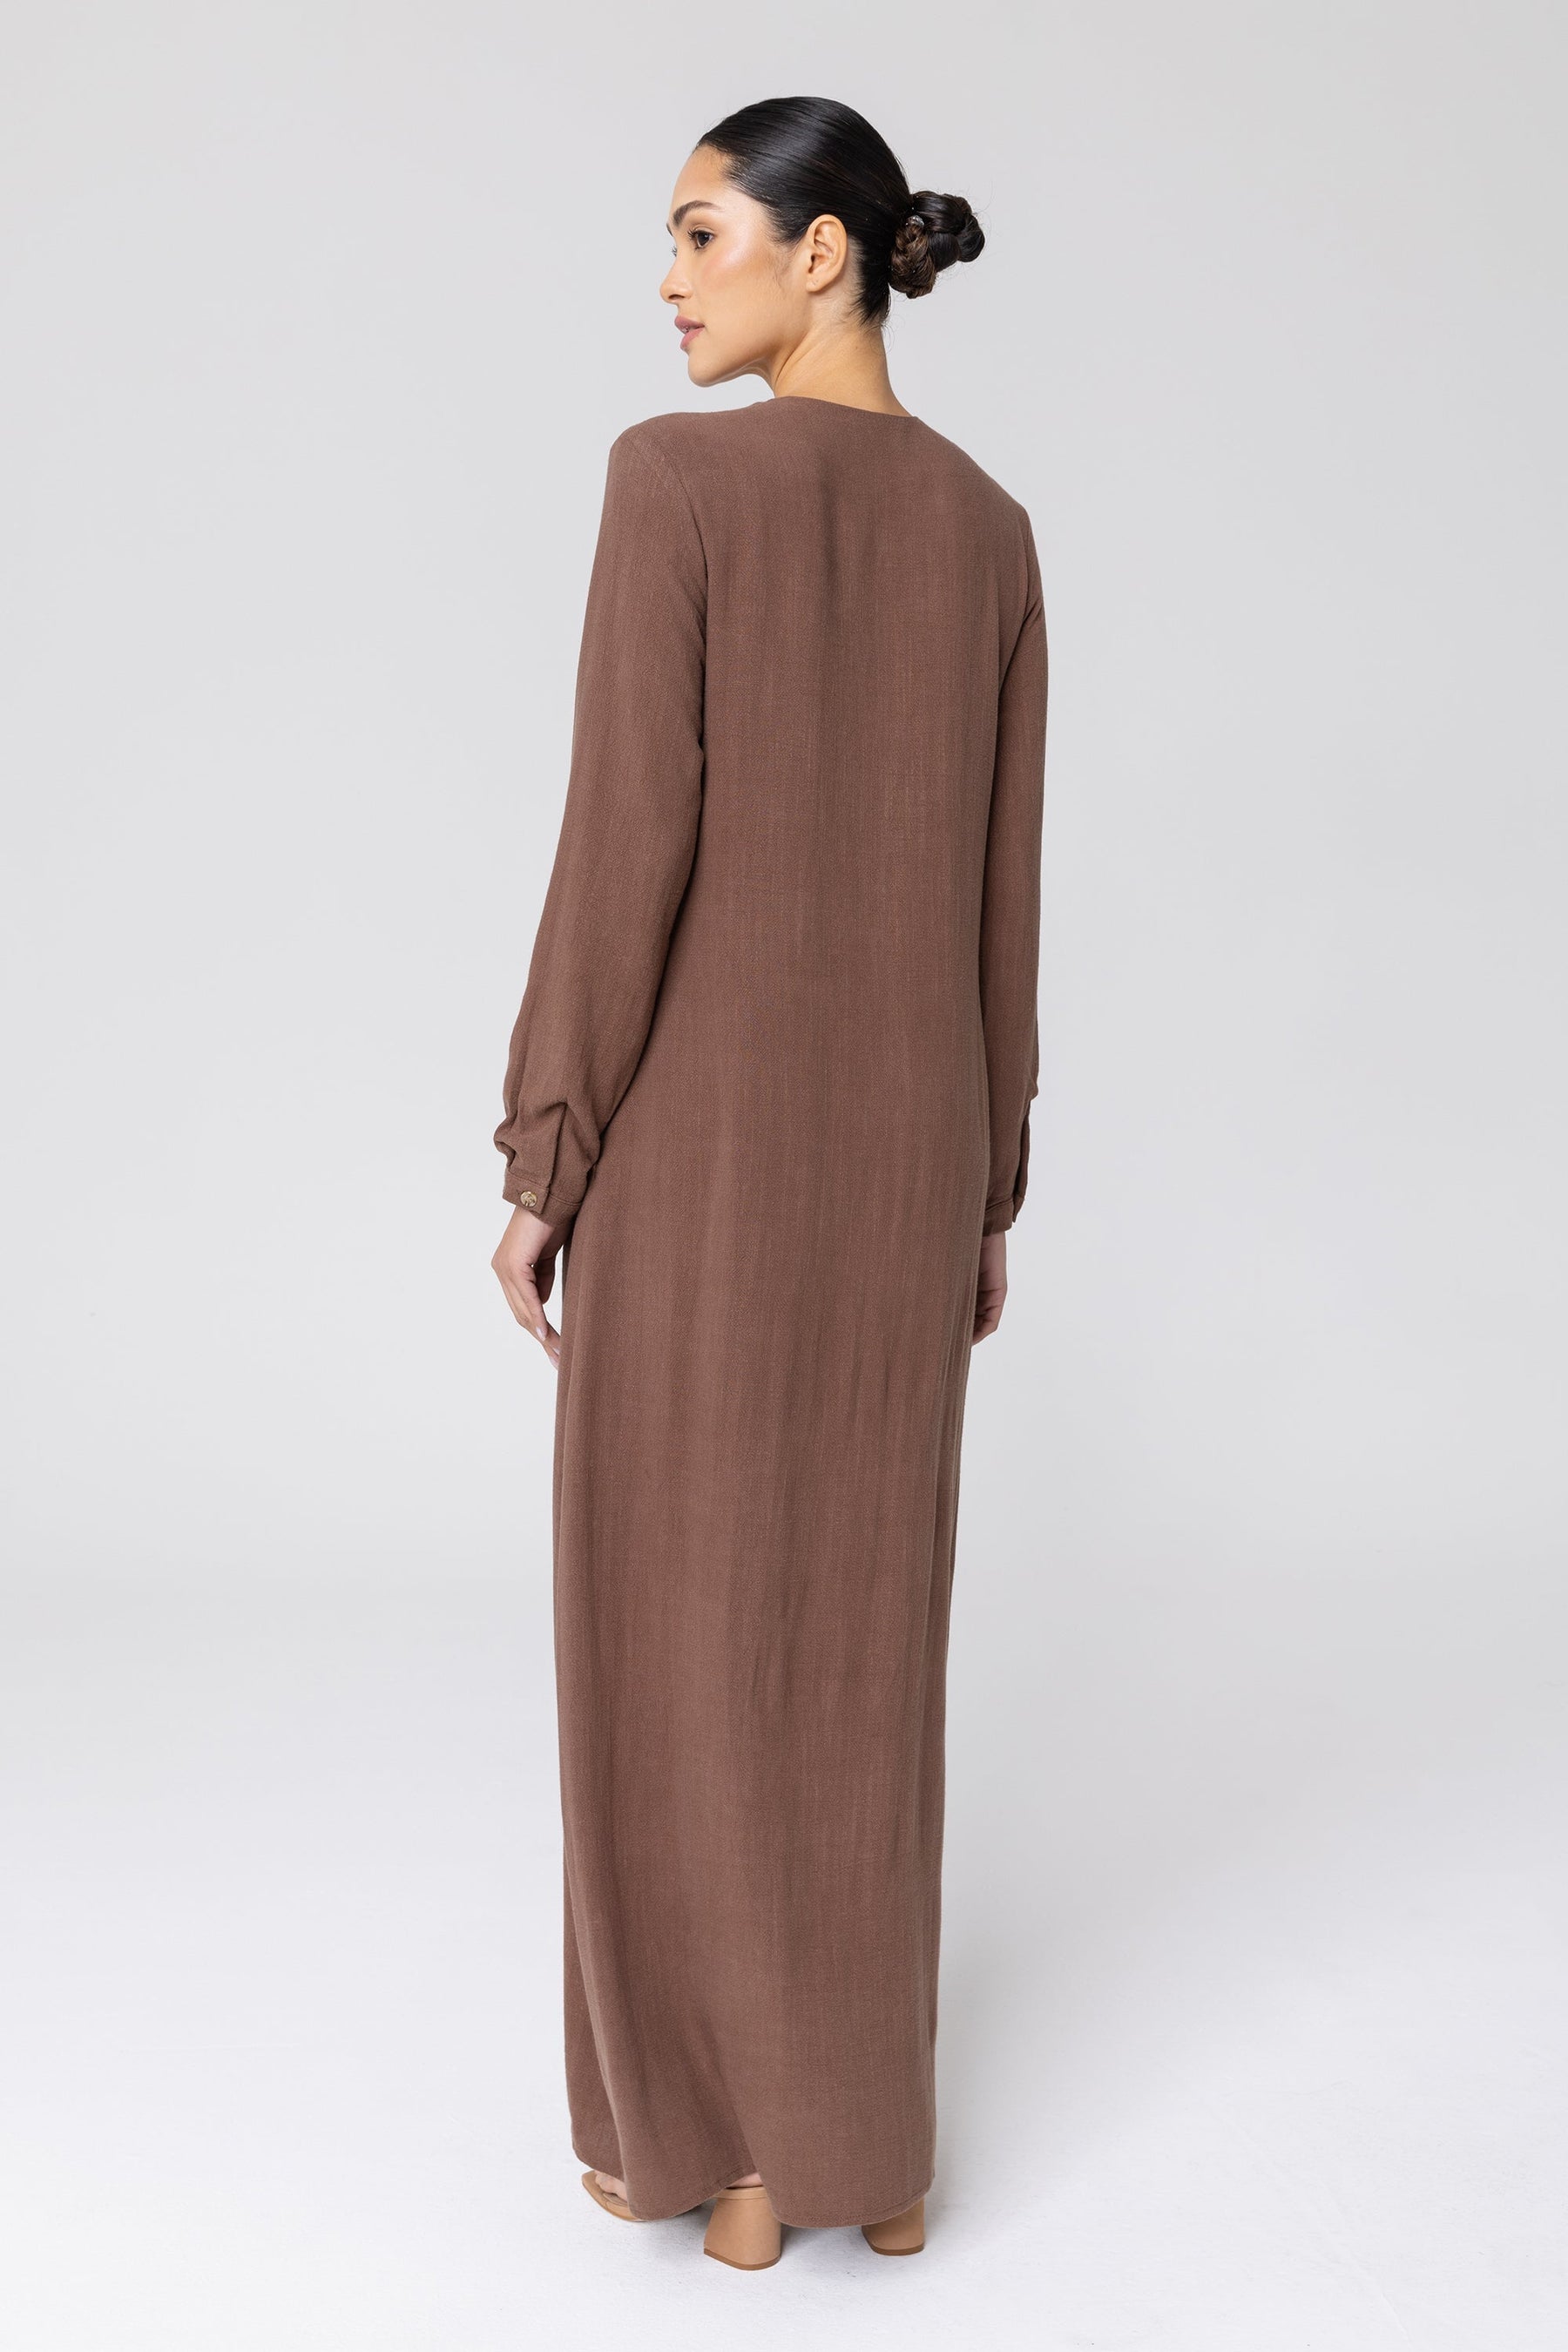 Sabah Cotton Linen Overlay Maxi Shirt Dress - Brown Veiled 